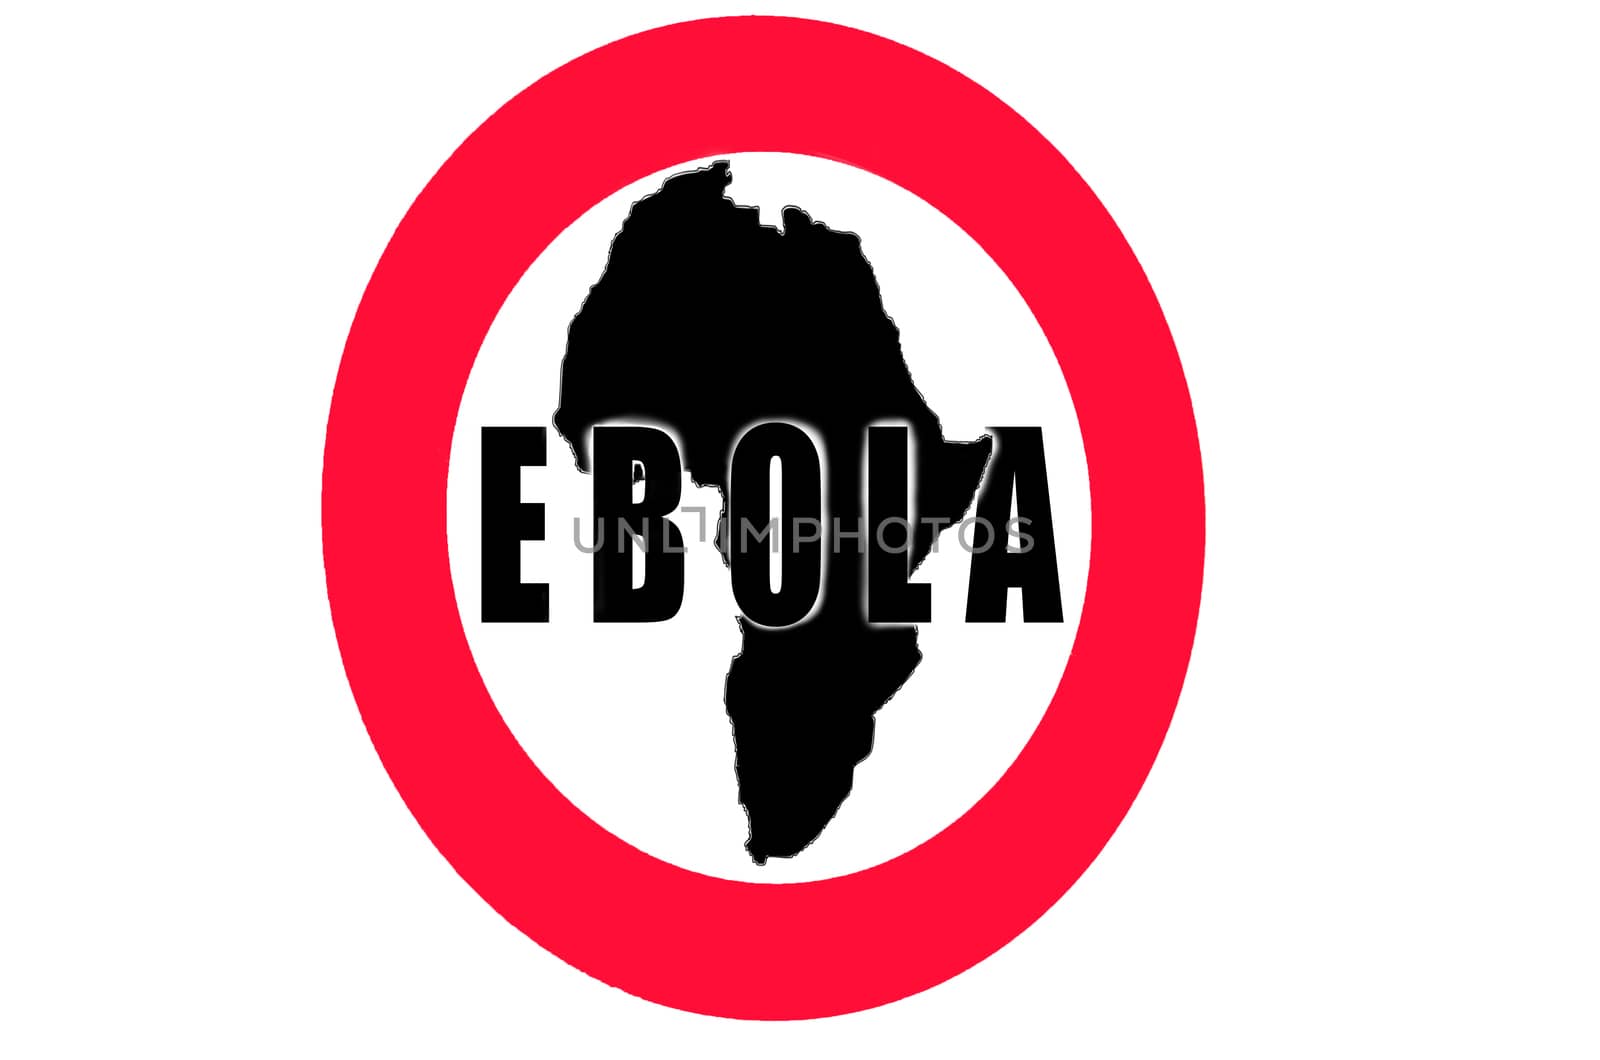 Ebola by JFsPic